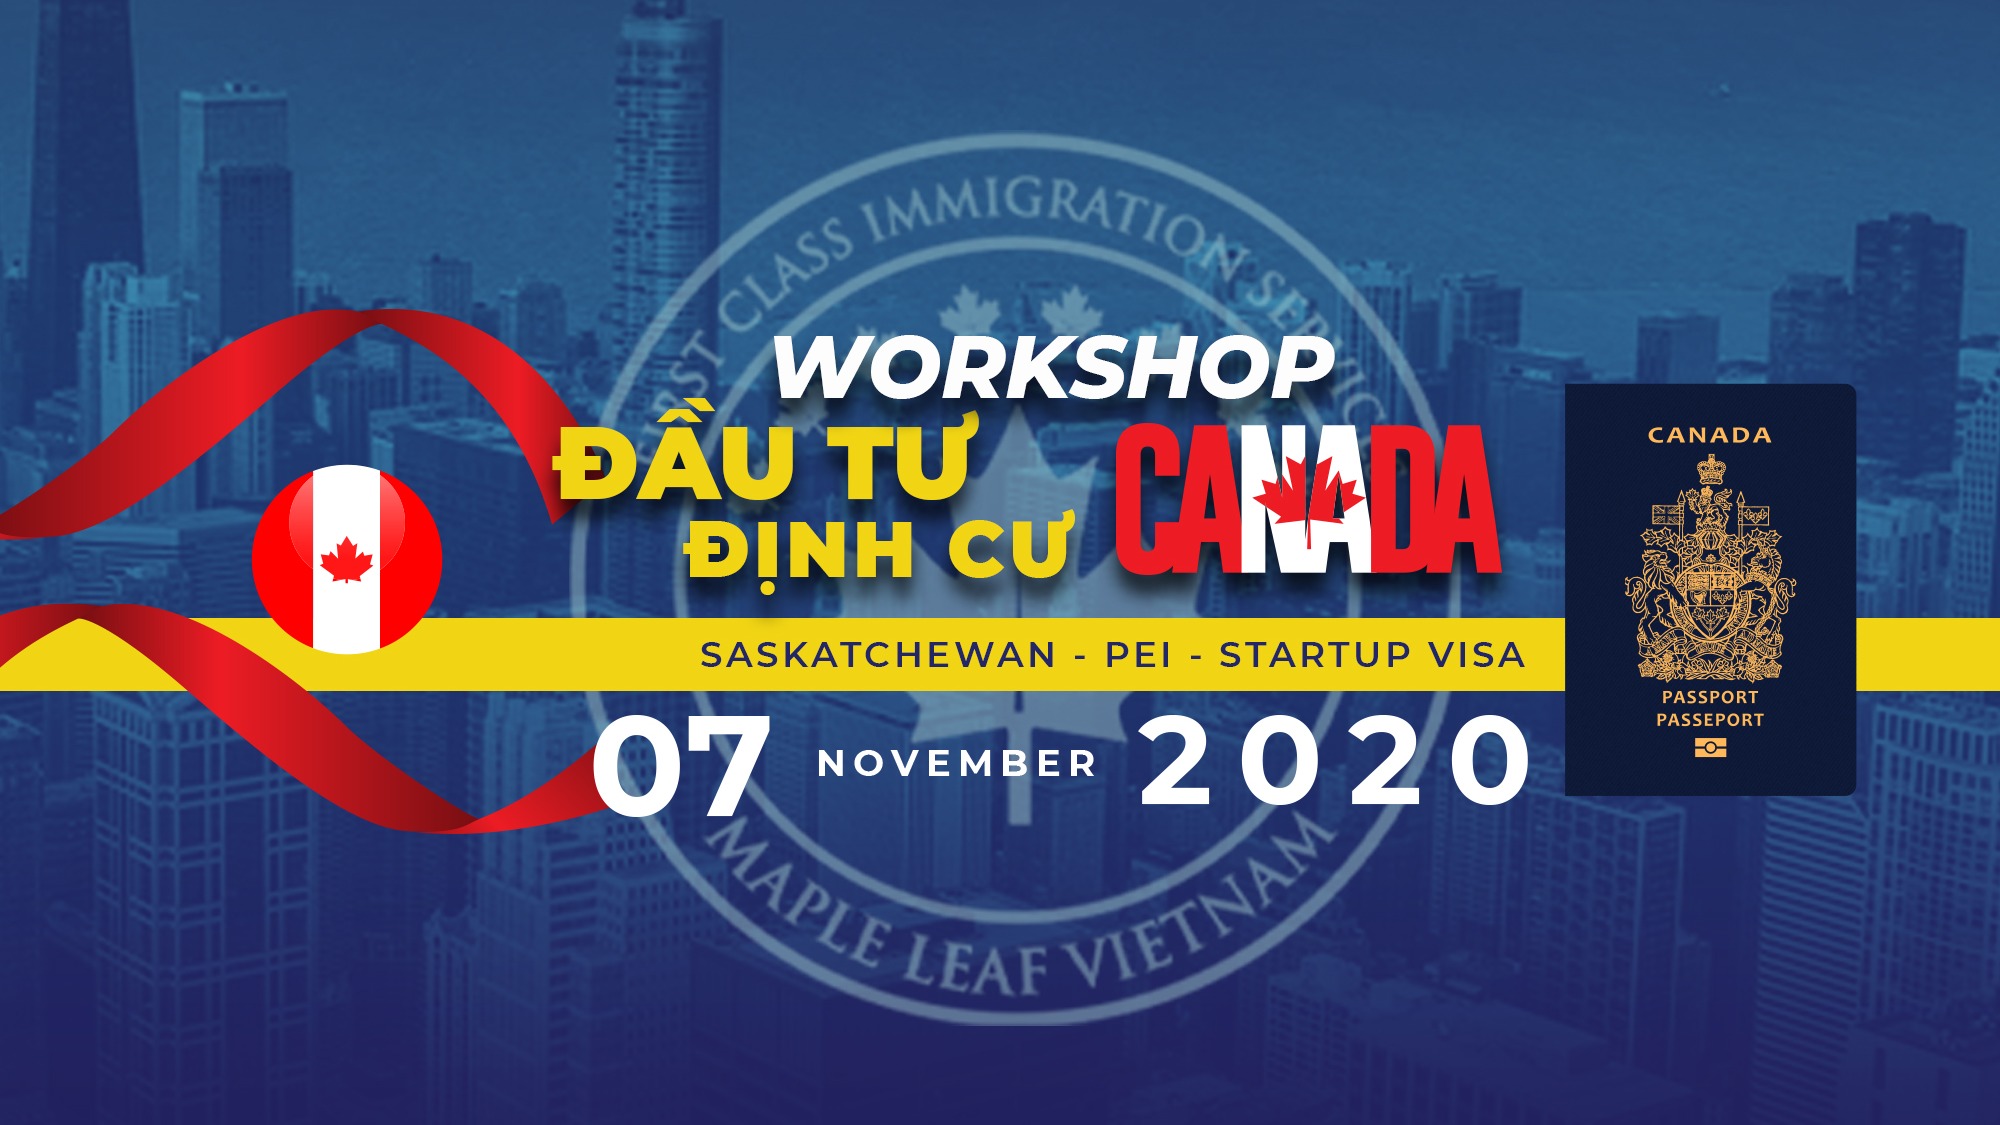 workshop-canada-cap-nhat-moi-nhat-chuong-trinh-dinh-cu-tinh-bang-112020